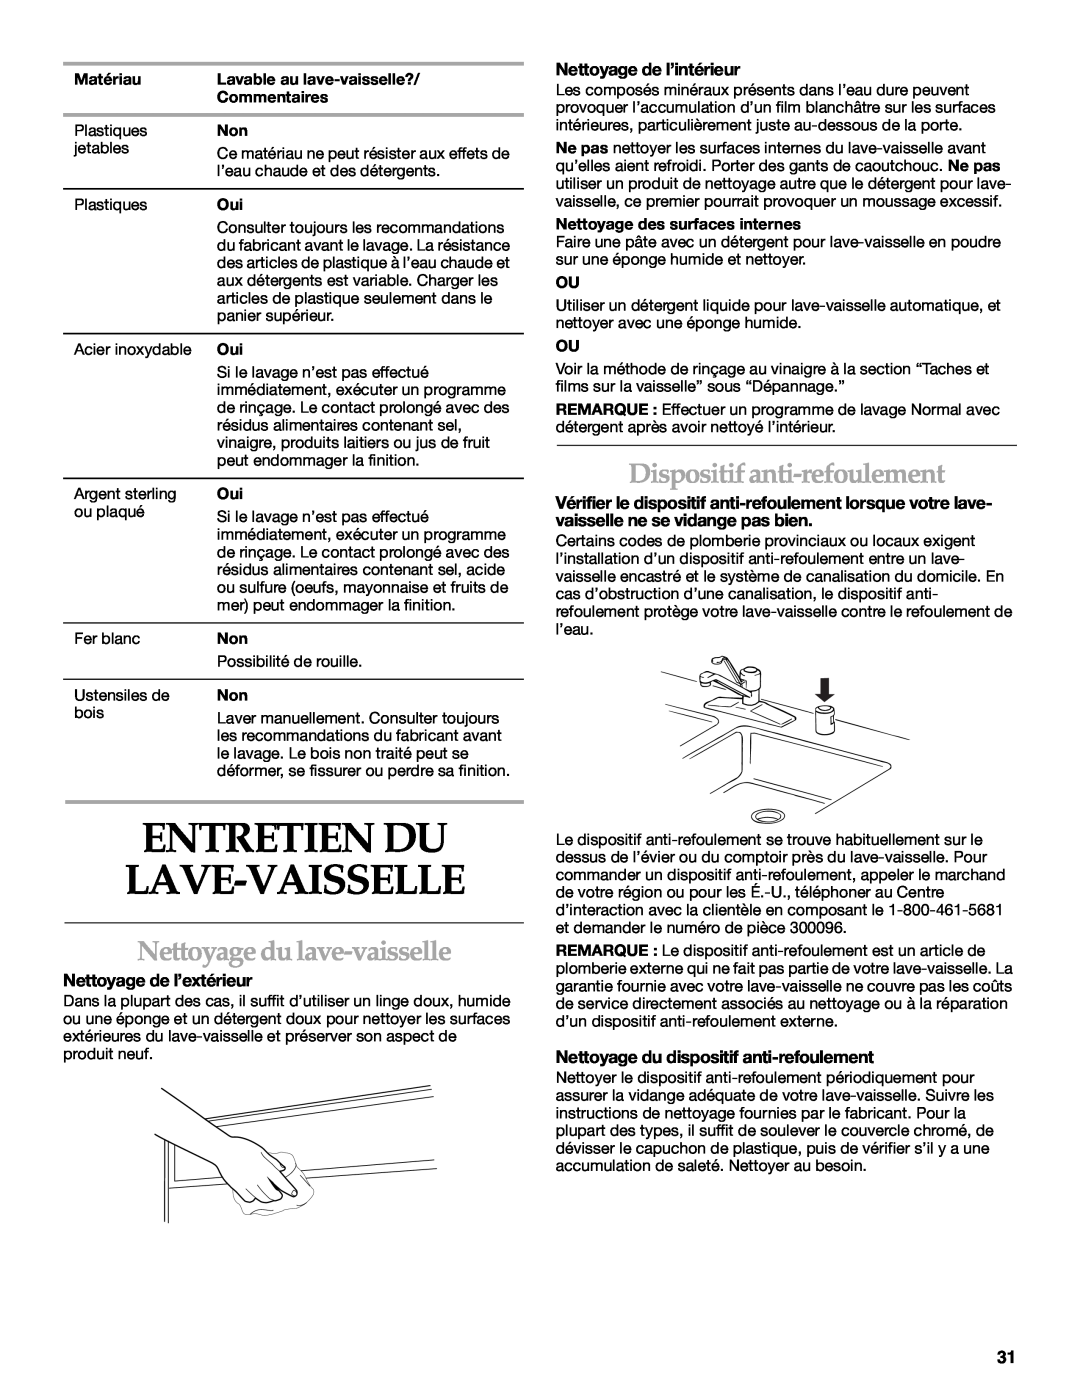 KitchenAid KUDM01TJ manual Entretien Du Lave-Vaisselle, Nettoyage du lave-vaisselle, Dispositif anti-refoulement 